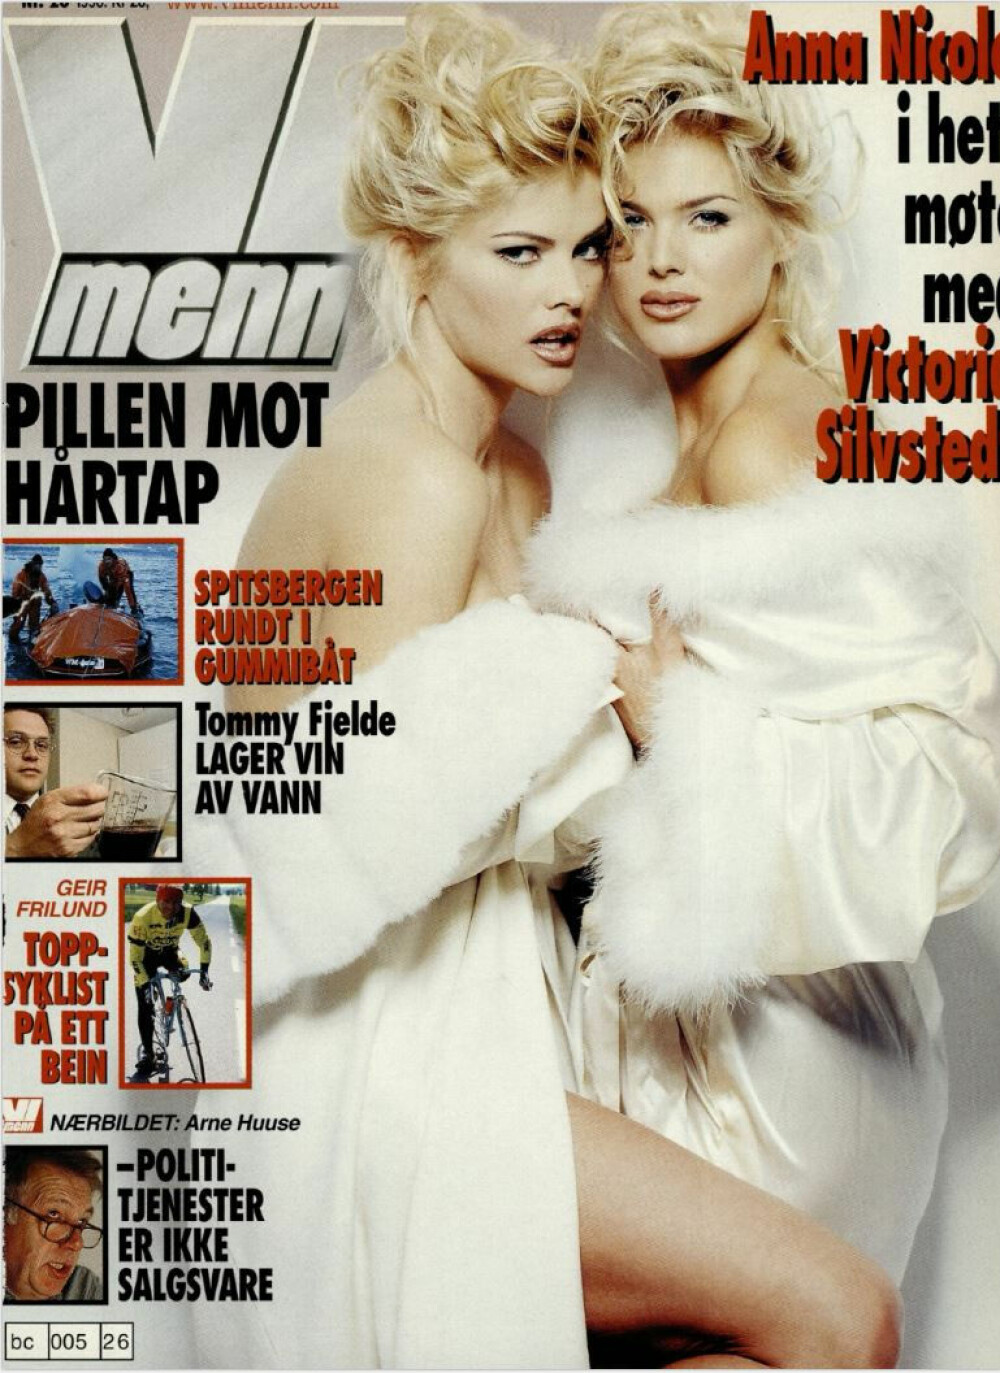 <b>BLOND OG BLONDERE:</b> Anna Nicole og Victoria Silvstedt var populære på 1990-tallet.